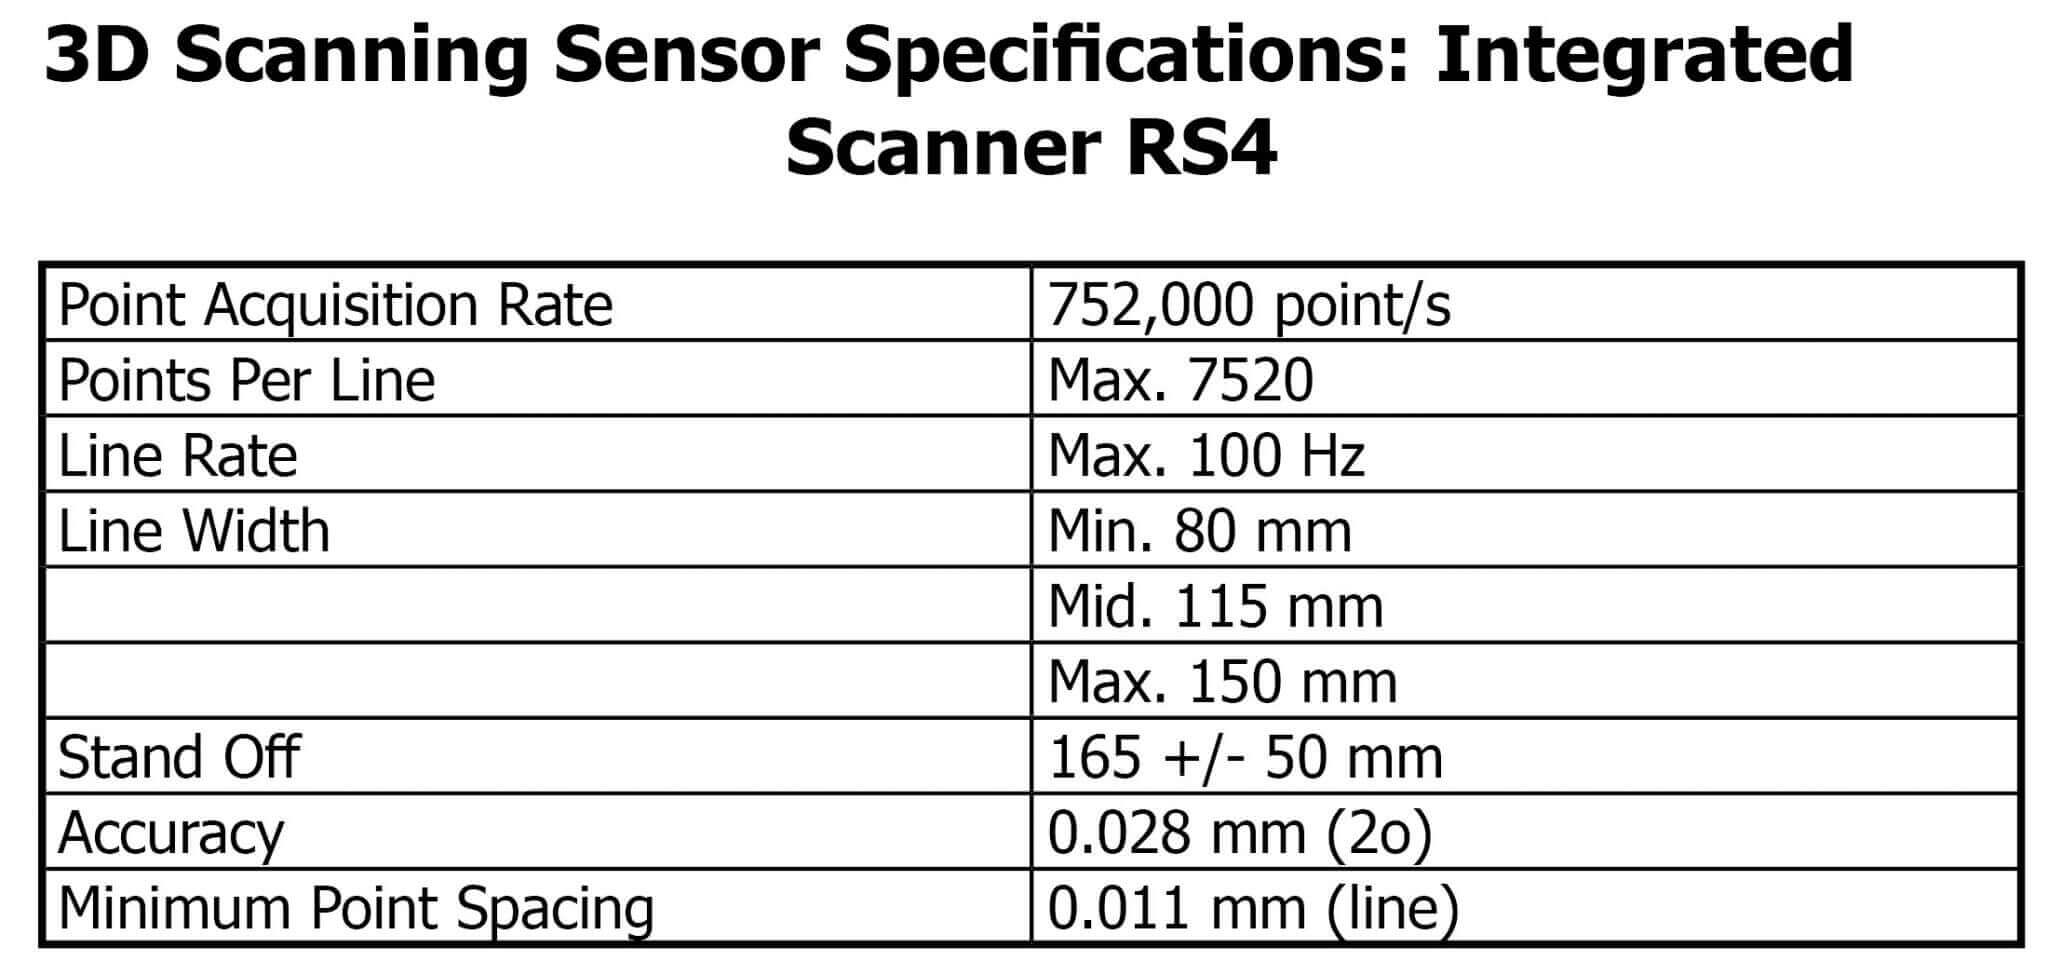 3d scanning sensor spec rs4 1